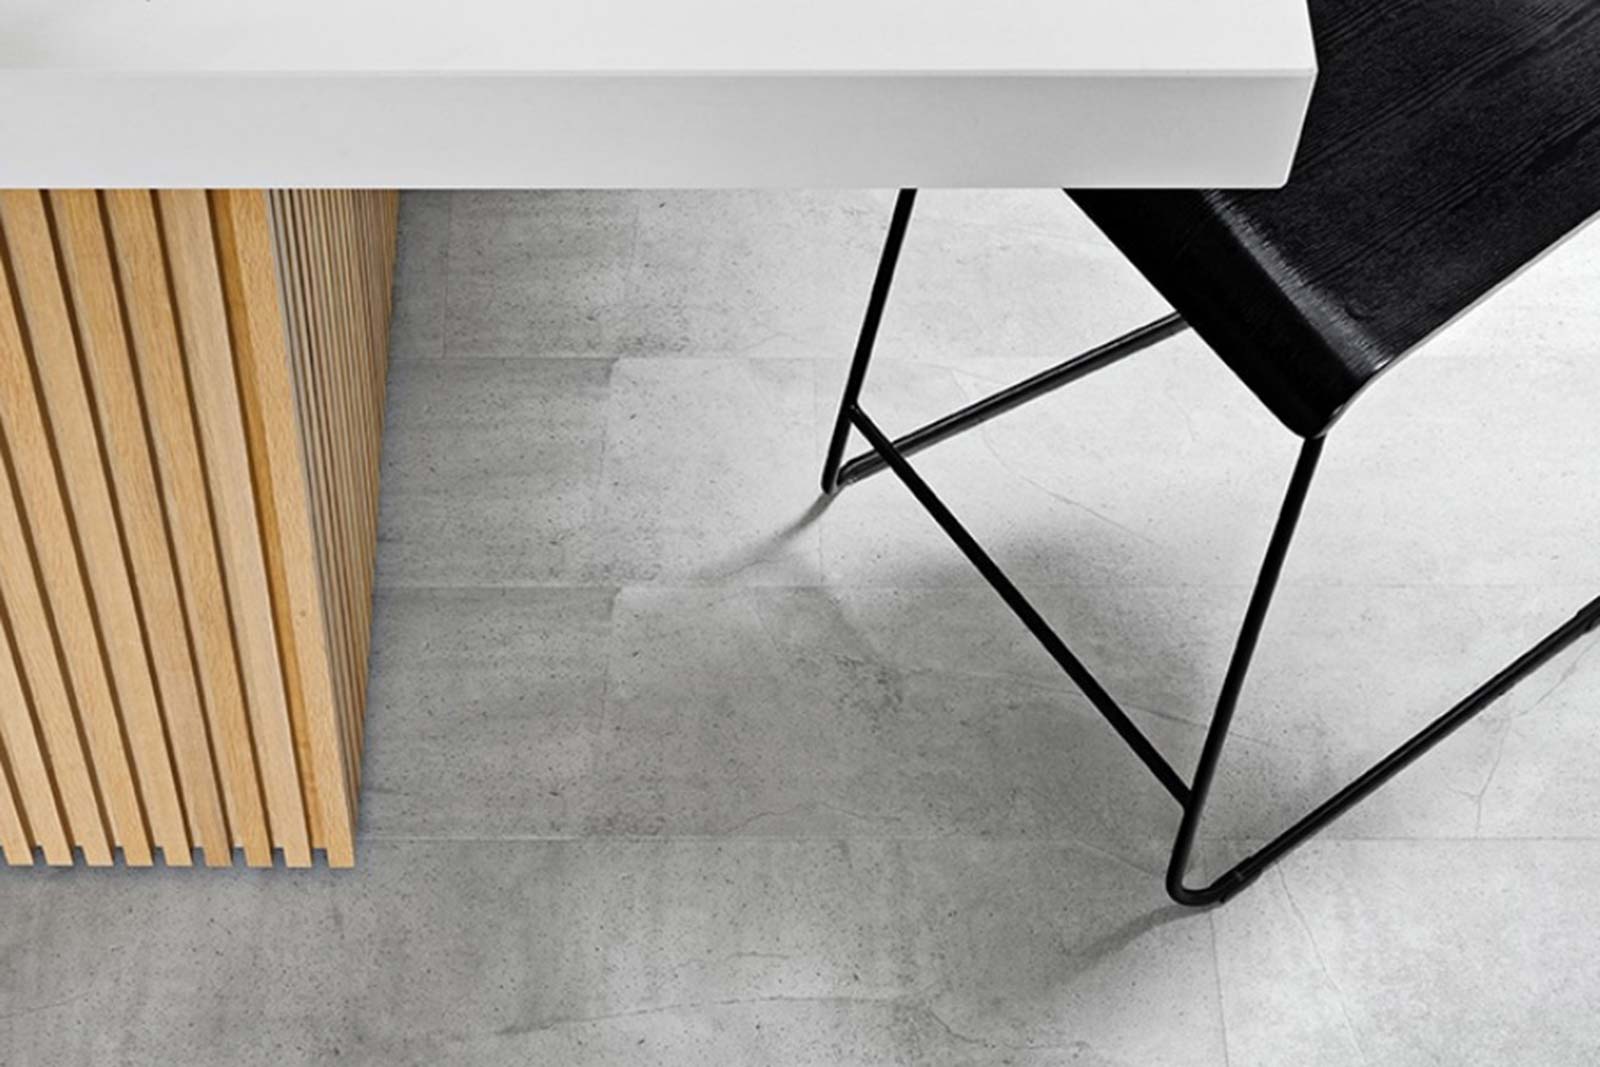 Adelaide Flooring Products: Quattro